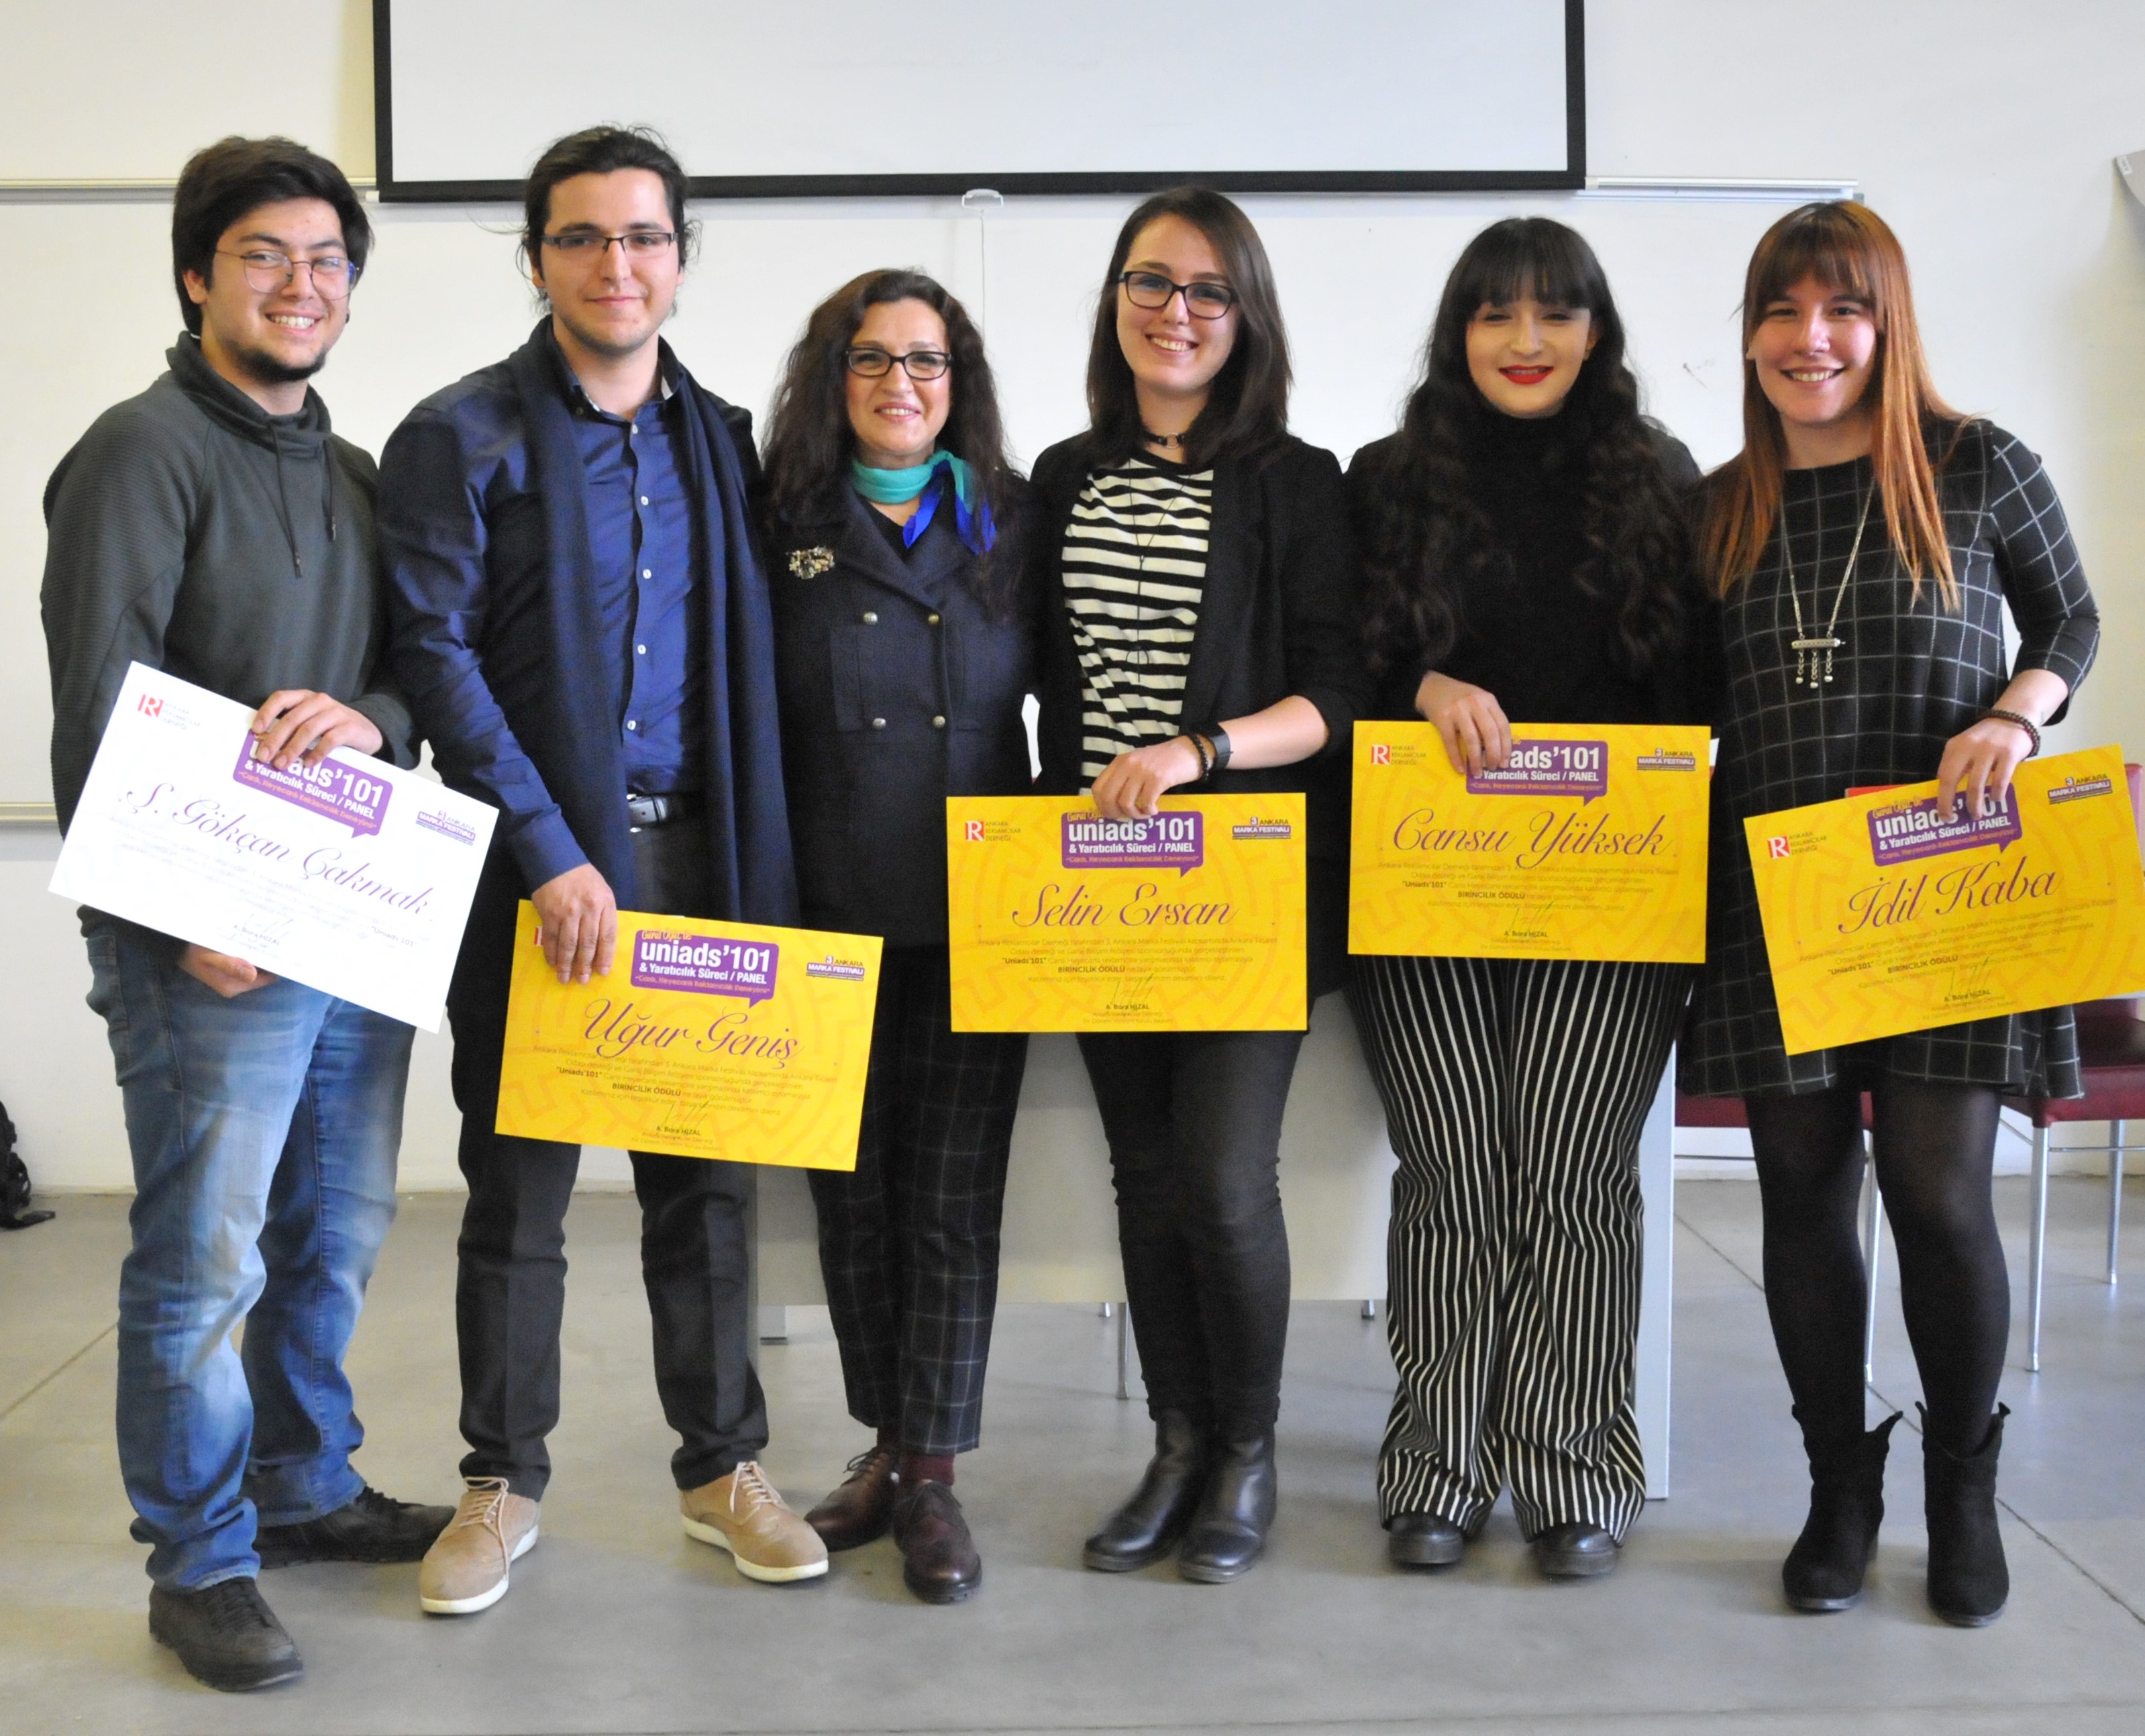 Görsel İletişim Tasarım Bölümü Öğrencilerimiz Ankara Marka Festivali Kapsamında Düzenlenen Reklamcılık Yarışmasında 1. Oldu